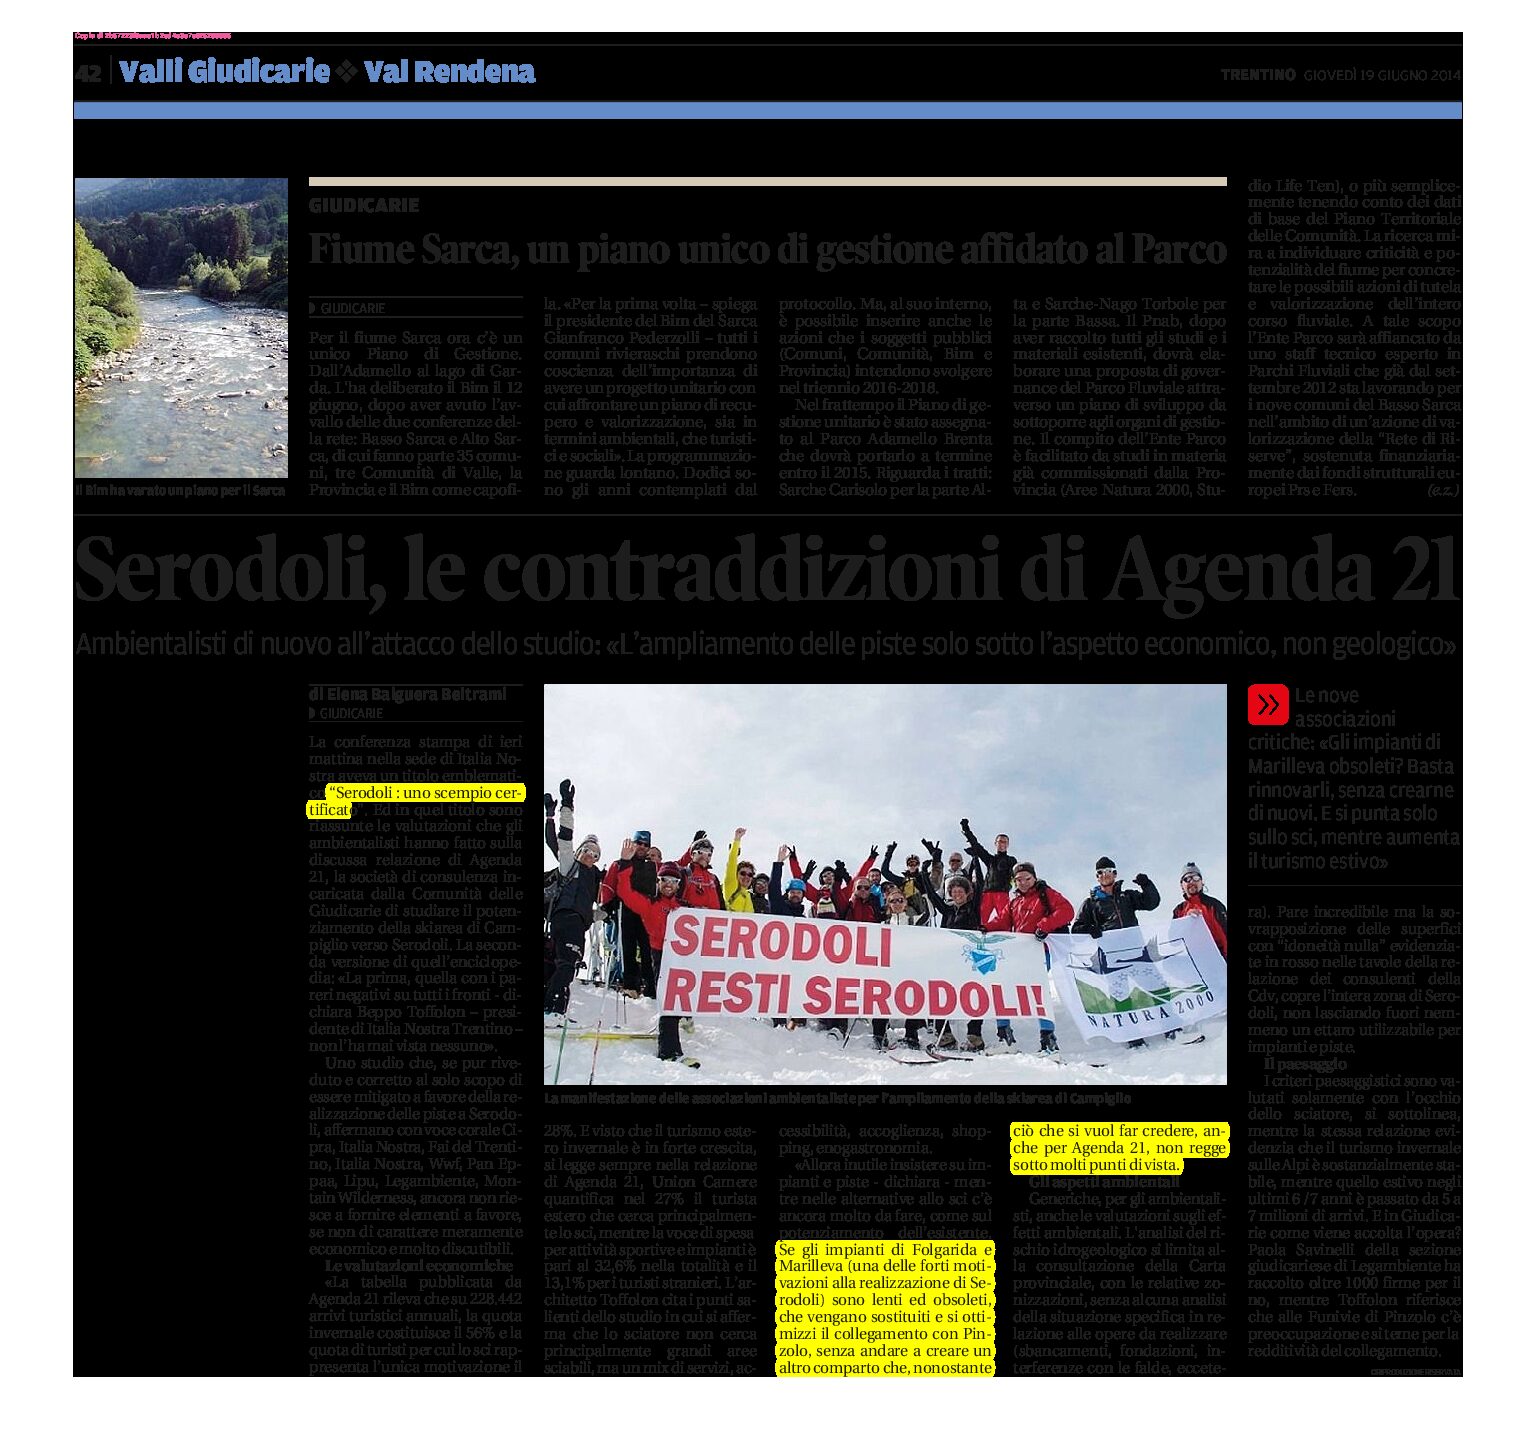 Serodoli: le contraddizioni di Agenda 21. Per Italia Nostra “uno scempio certificato”